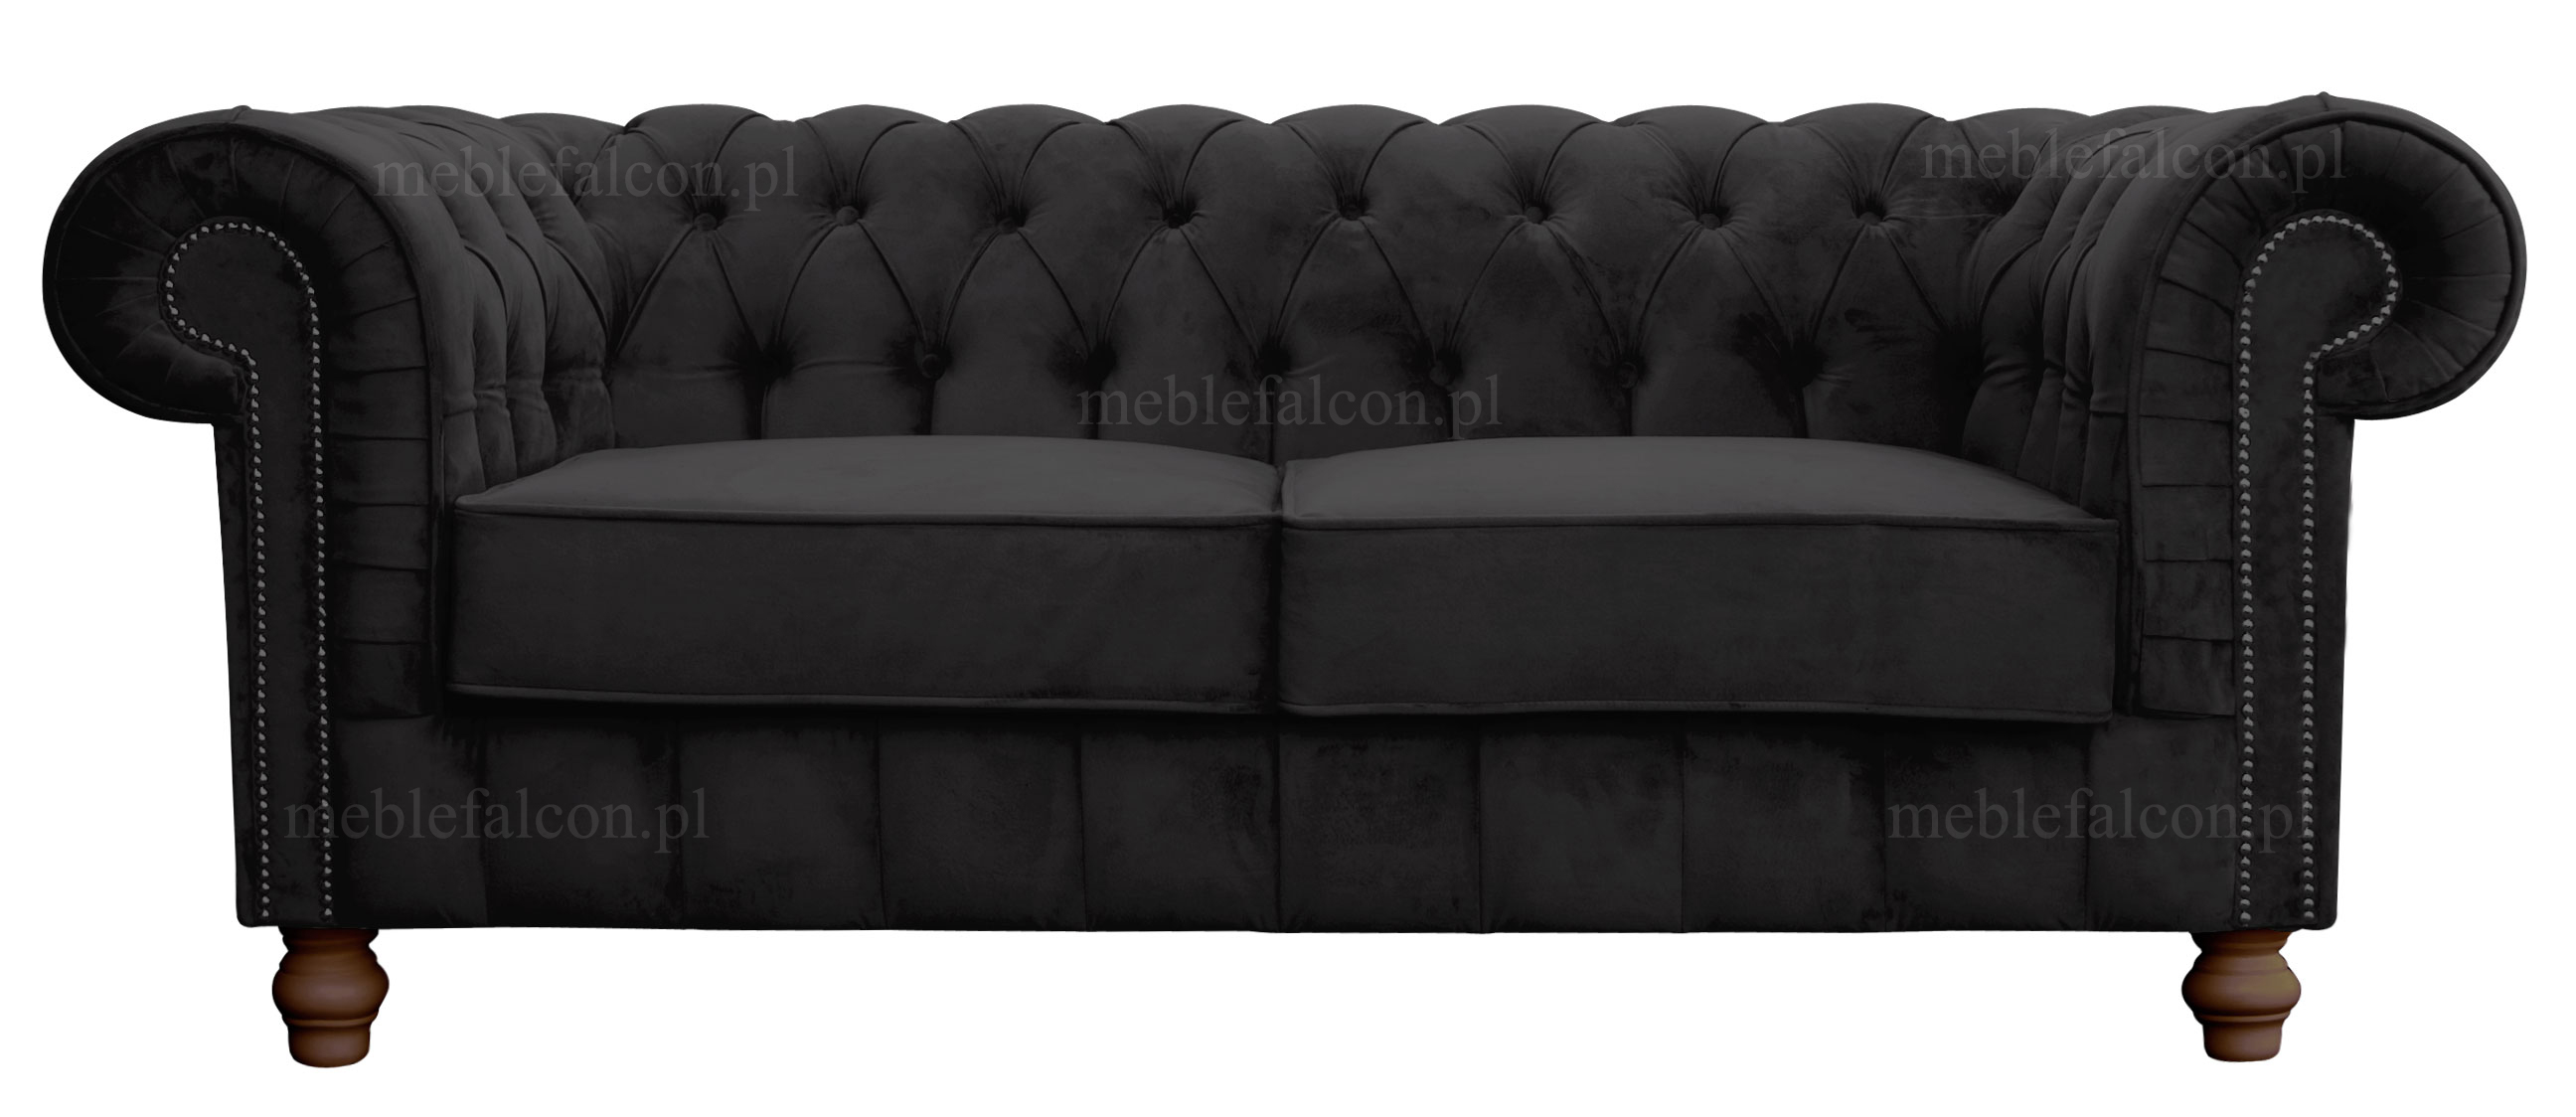 precyzyjnie wykonana wygodna sofa w czarnym pluszu bogato zdobiona wyjątkowa sofa w stylu angielskim